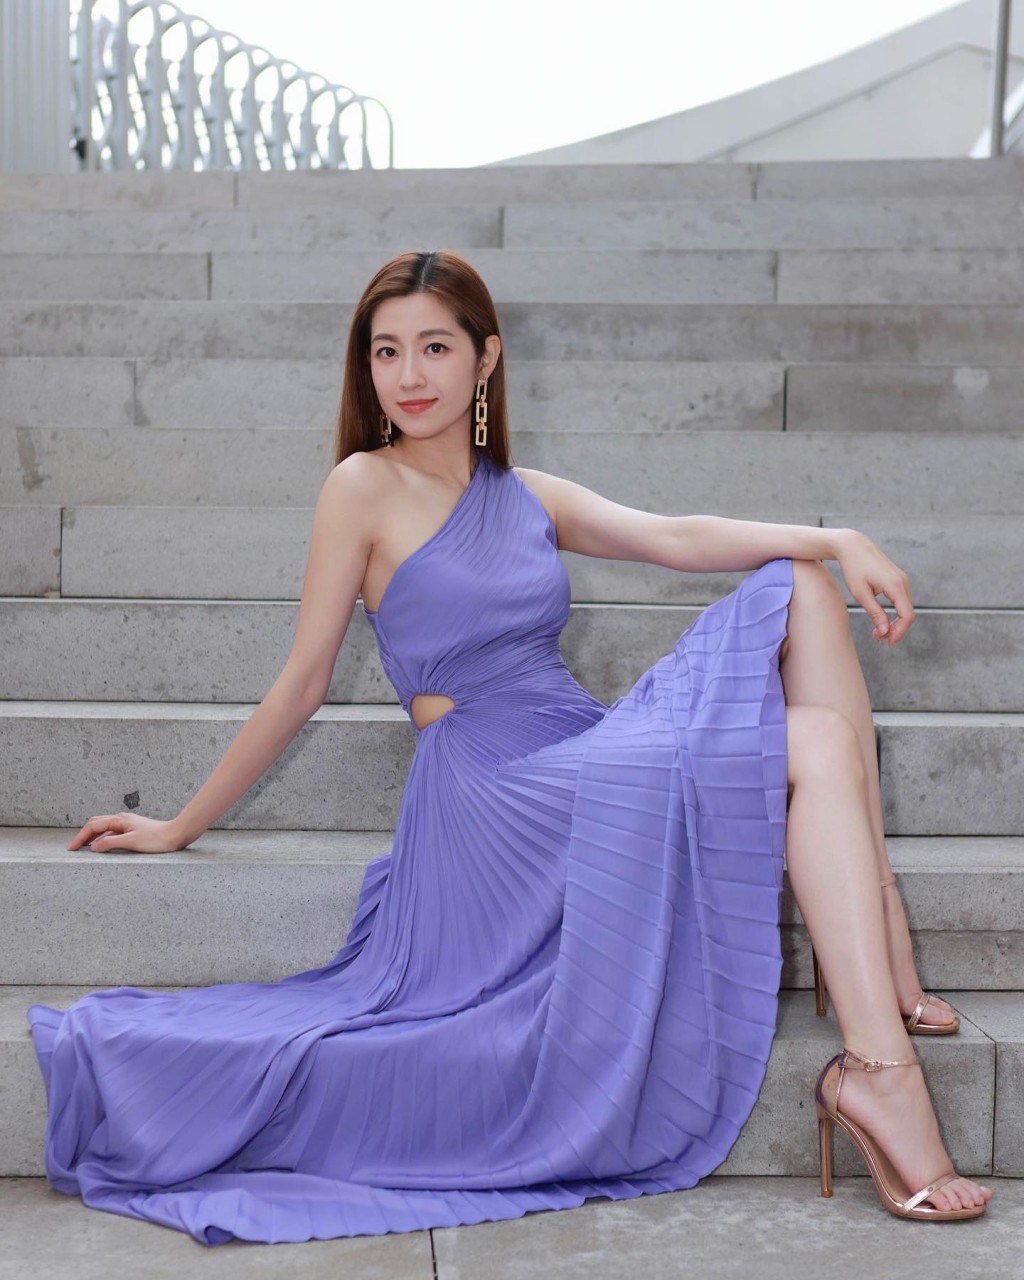 即使坐在楼梯时，陈自瑶的身材也完全没有走样。